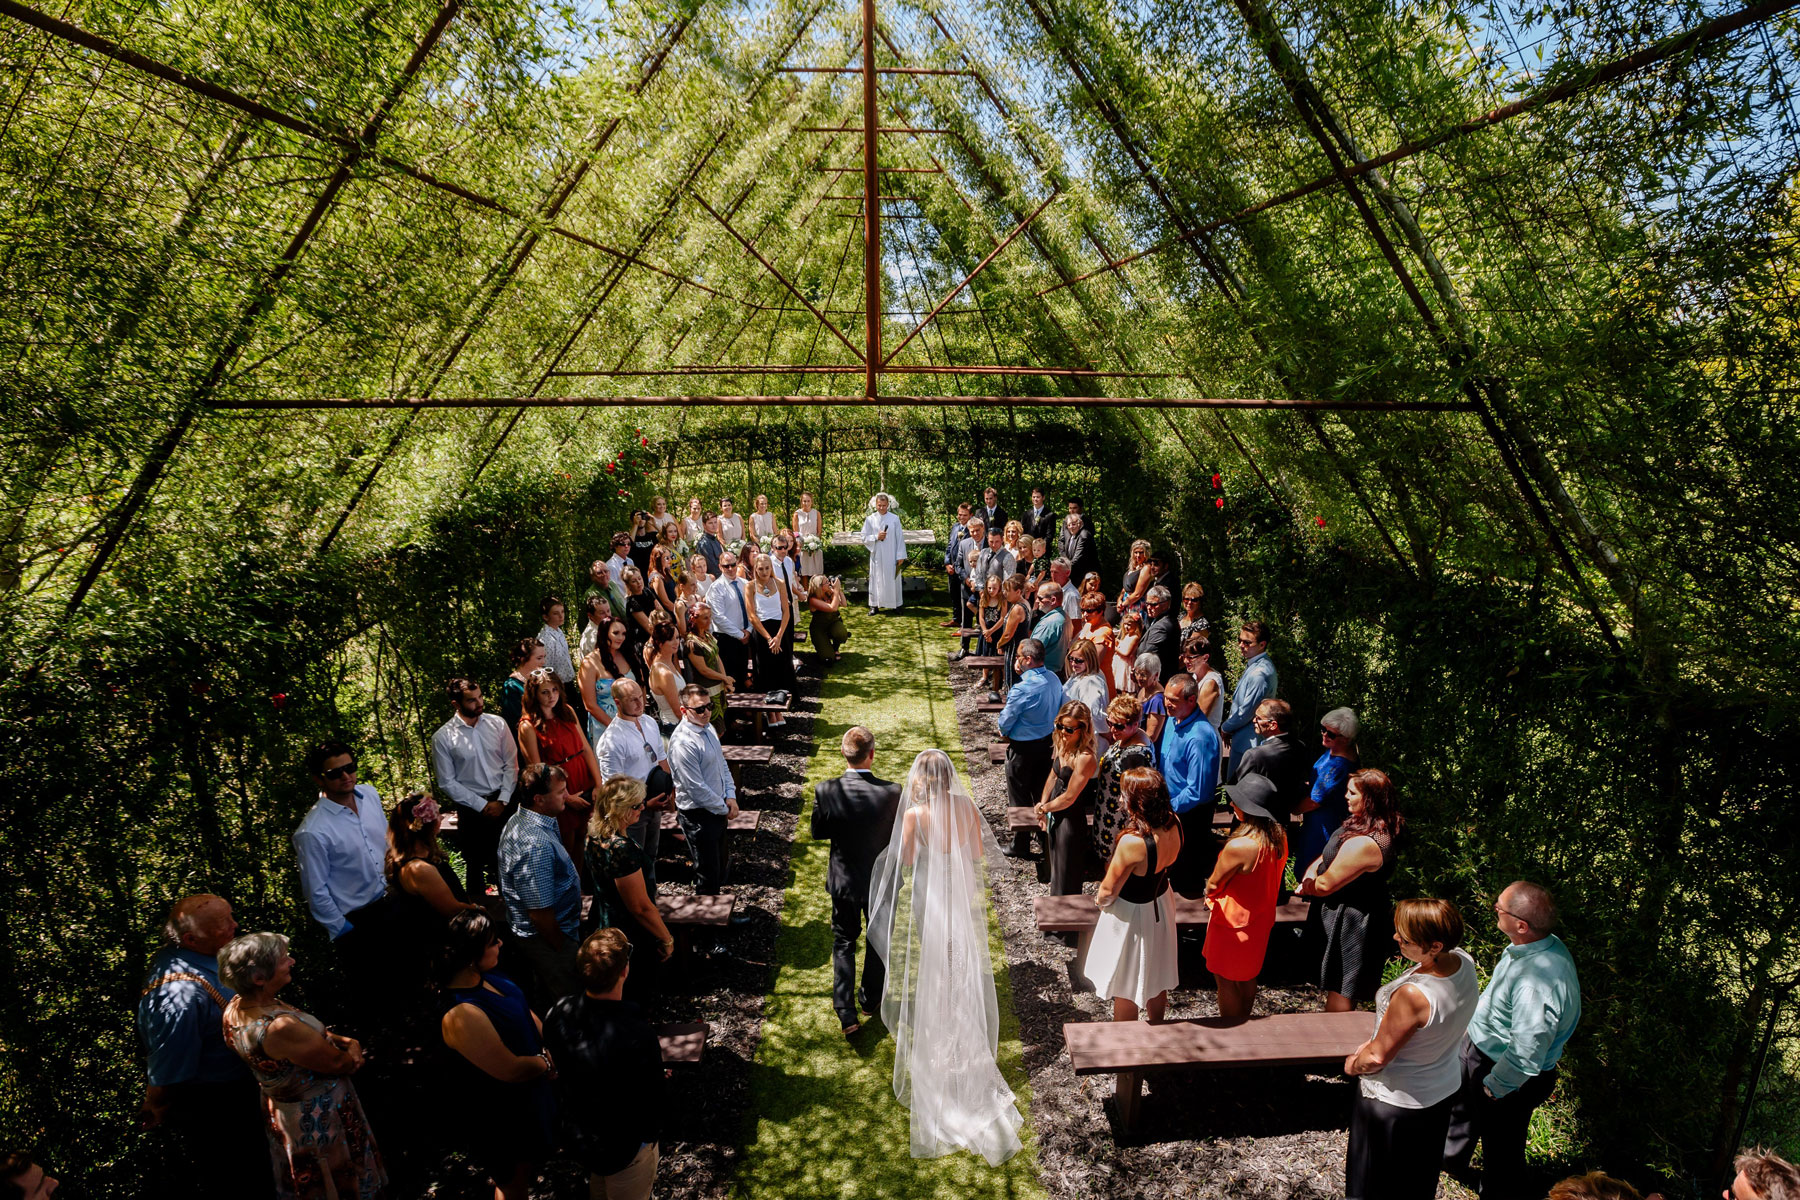 Nuova Zelanda: “TreeChurch” la chiesa degli alberi dove tutti vogliono sposarsi